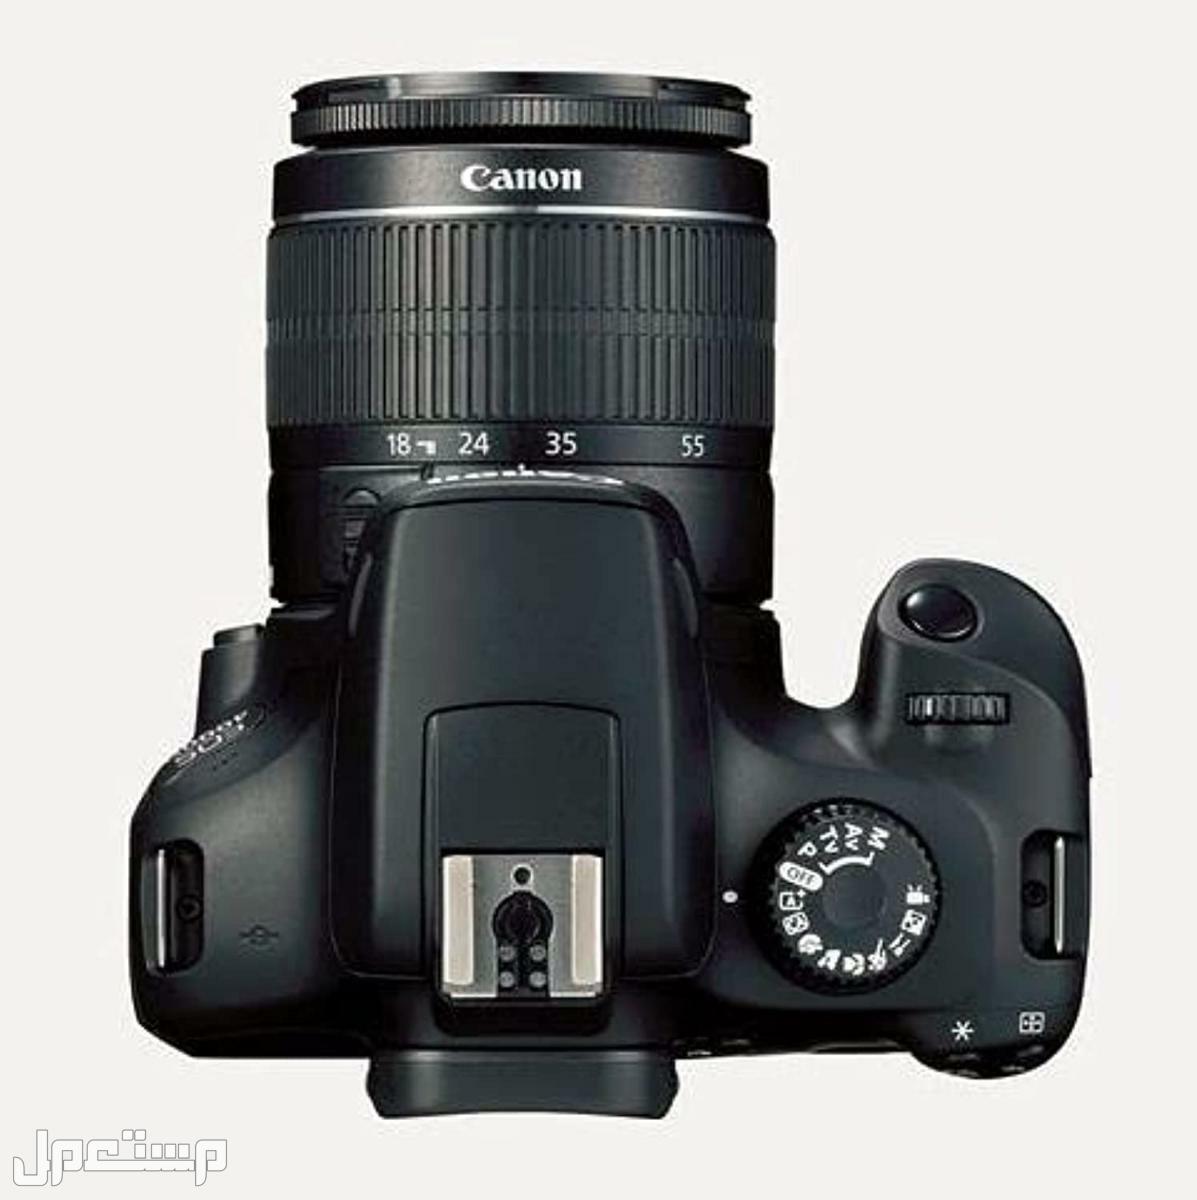 مواصفات وأهم مميزات وأسعار أرخص كاميرا تصوير من كانون في تونس كاميرا كانون  D 4000 بعدسة احادية